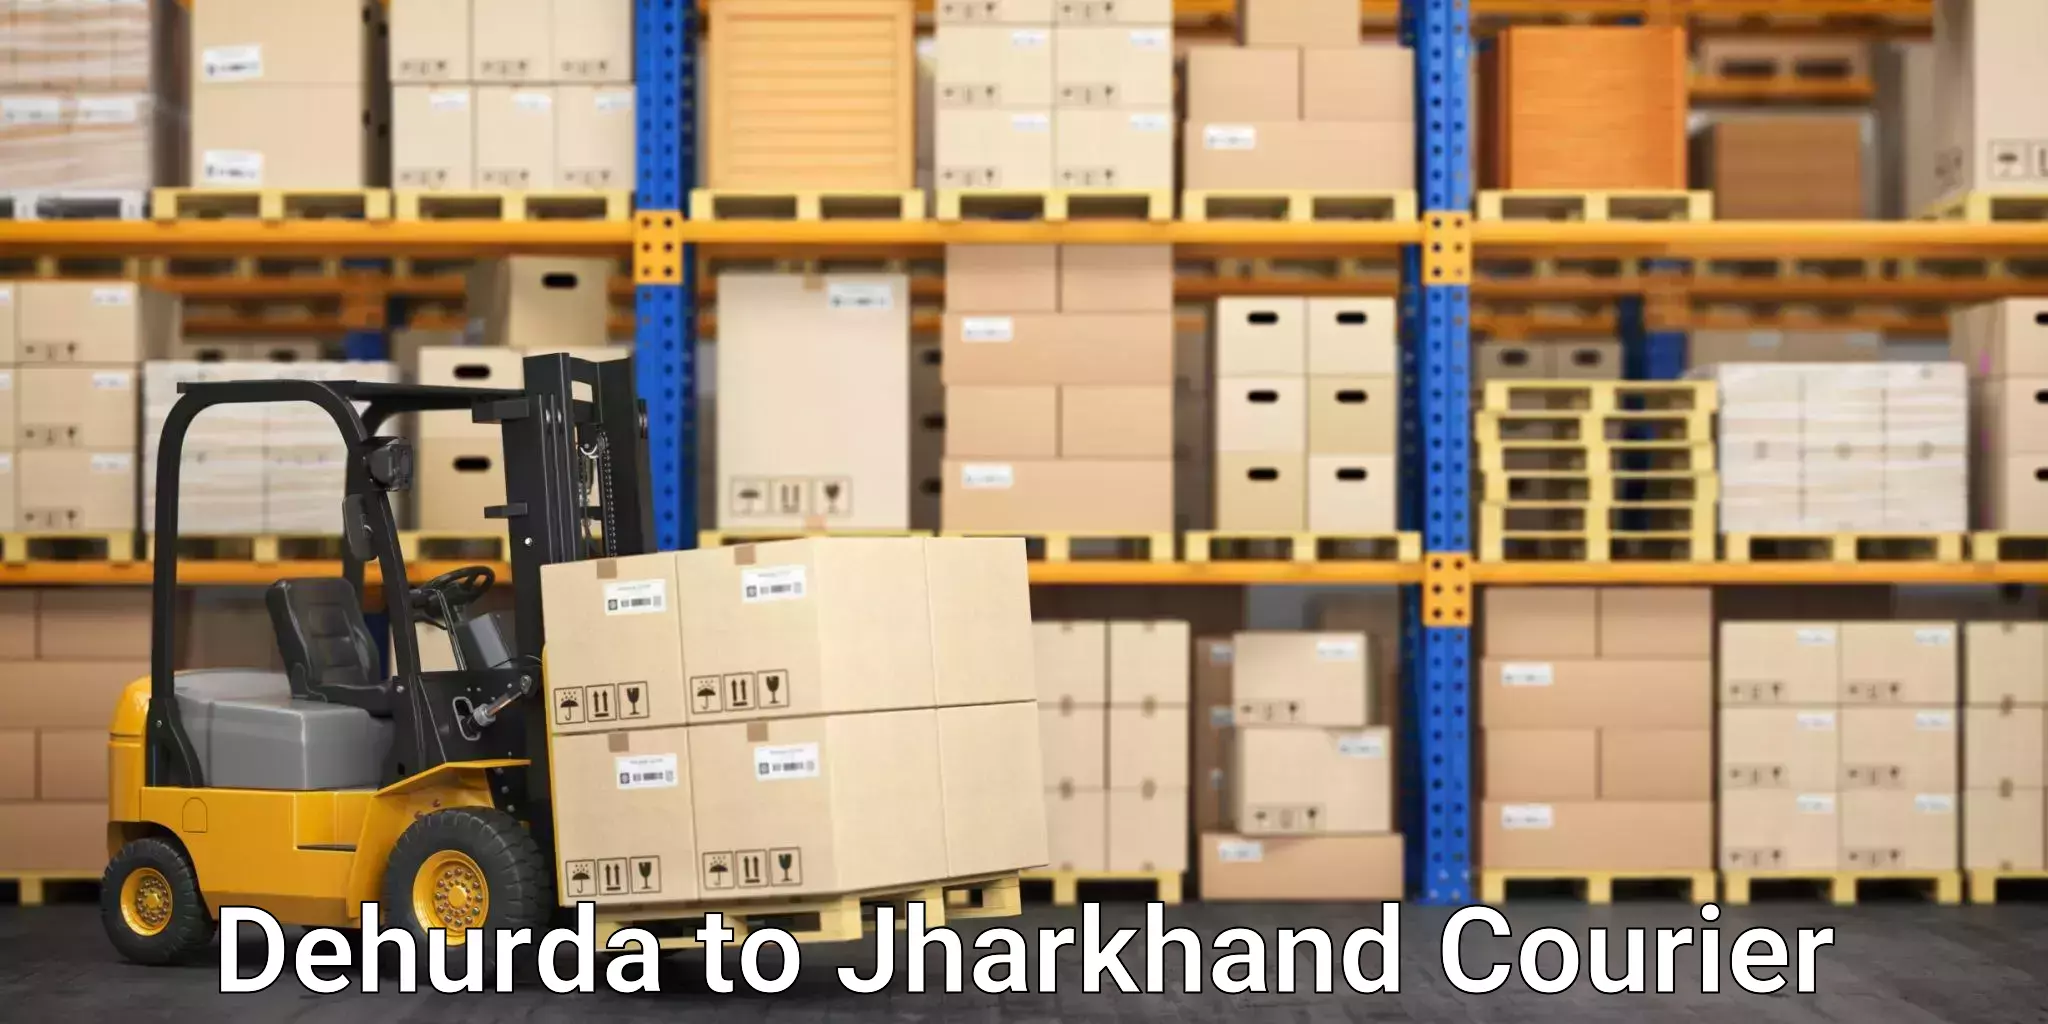 Retail shipping solutions Dehurda to Chatra